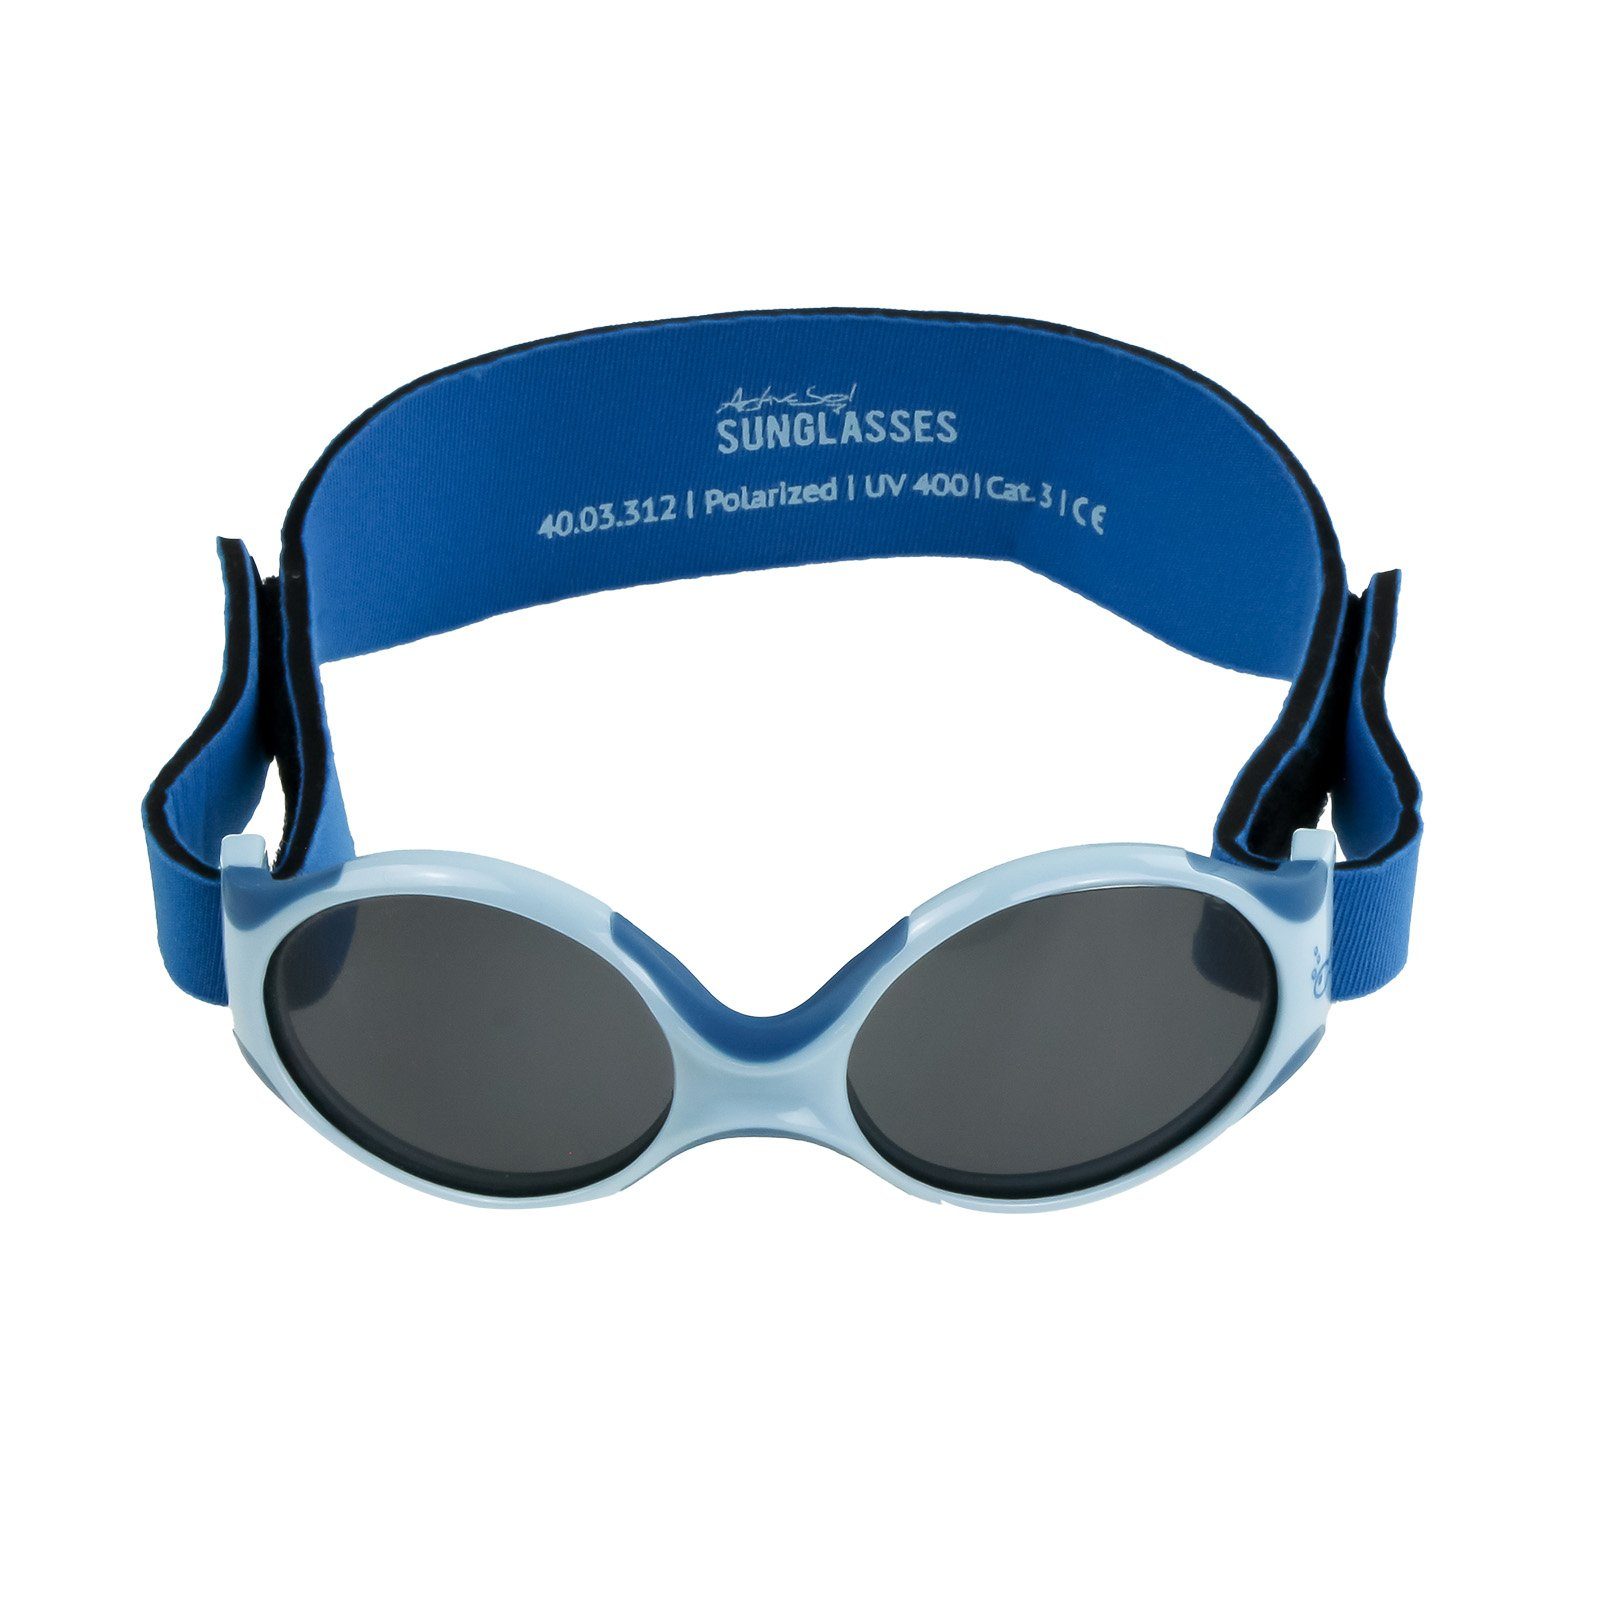 ActiveSol SUNGLASSES Sonnenbrille Baby Polarisierte Fisch - Lotuseffekt, Mädchen, Sonnenbrillen mit Jungen supersoft, EXPLORER, verstellbar Gläser 0-2 premium blau & Jahre